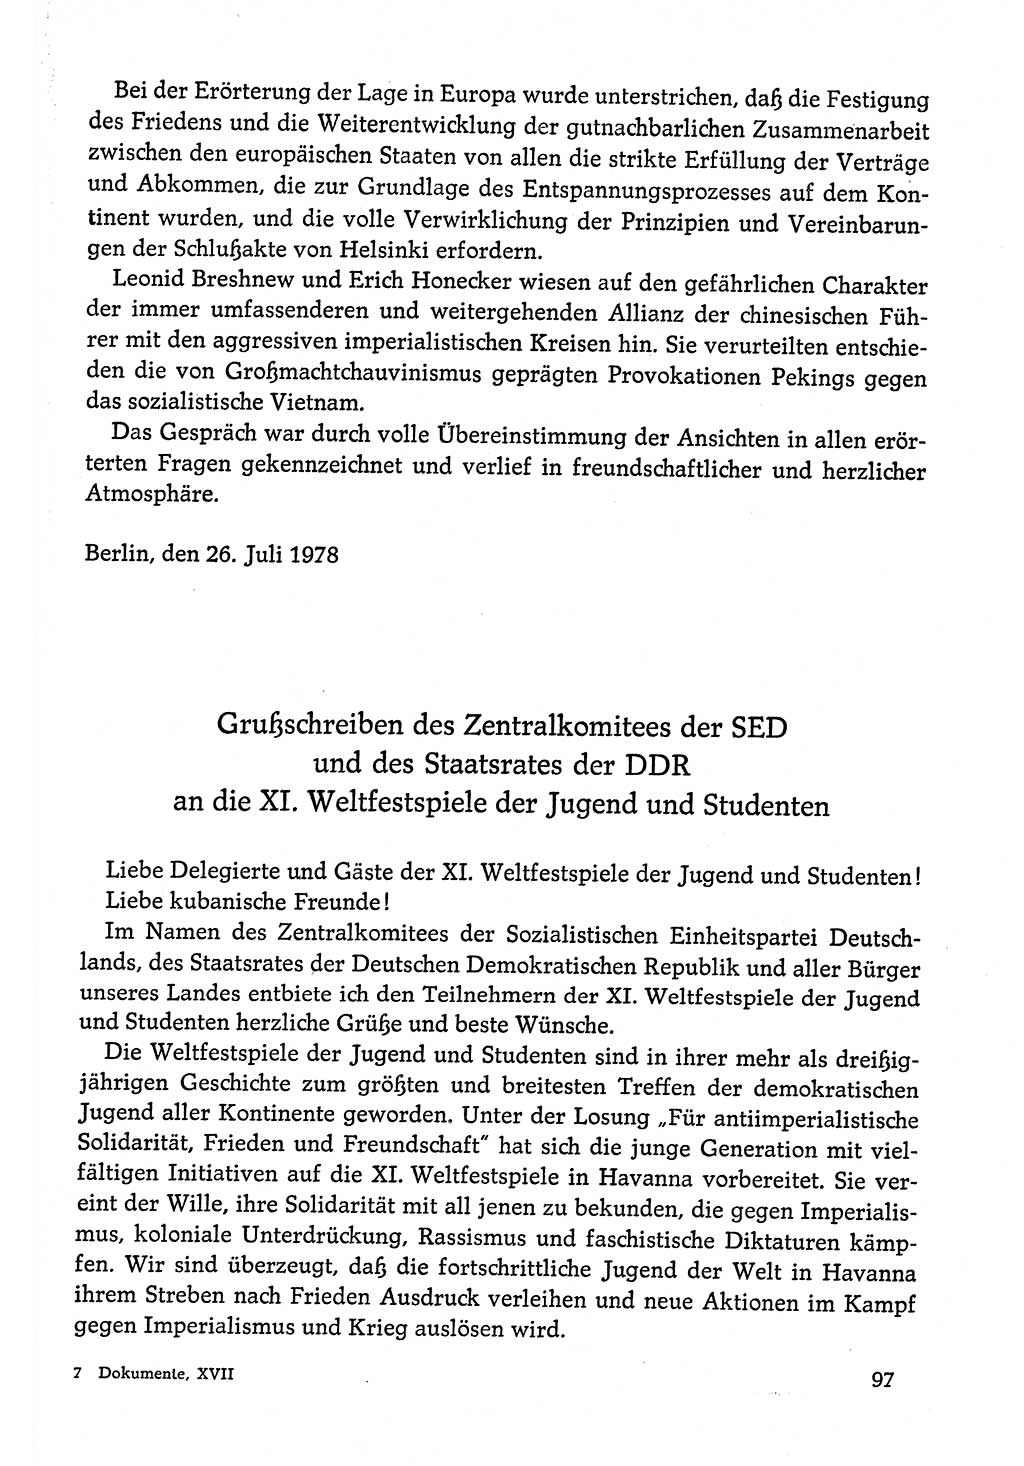 Dokumente der Sozialistischen Einheitspartei Deutschlands (SED) [Deutsche Demokratische Republik (DDR)] 1978-1979, Seite 97 (Dok. SED DDR 1978-1979, S. 97)